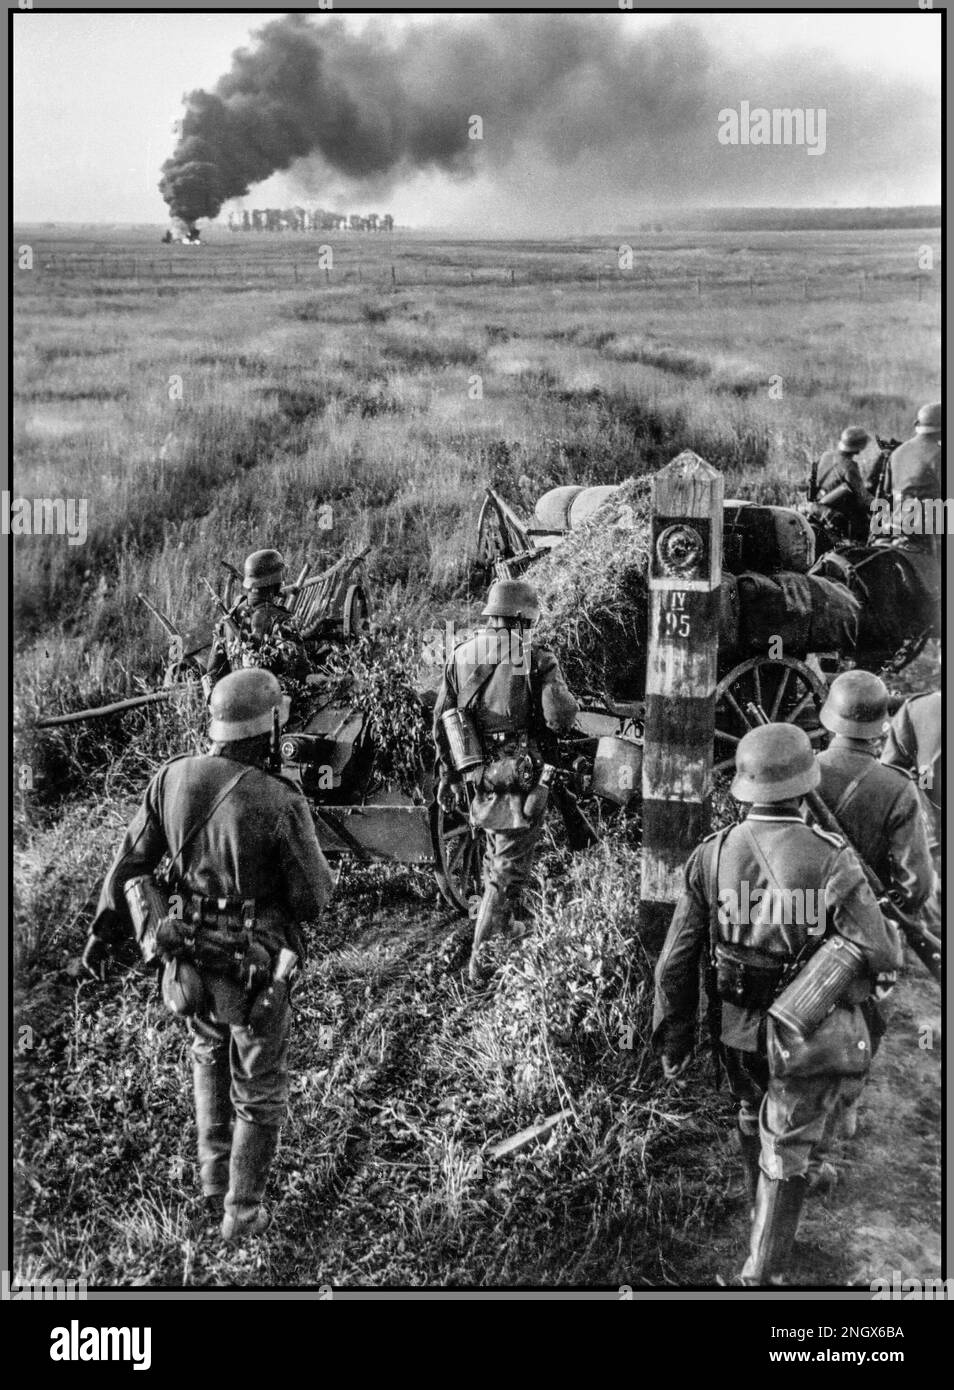 OPÉRATION BARBAROSSA WW2 Barbarossa 22 1941 juin – 5 décembre 1941 troupes allemandes avec un poichte de 7,5 cm Infanteriegeschütz 18 canons traversant la frontière soviétique pendant l'opération Barbarossa, près du marqueur frontalier IV/95. L'emplacement a été déterminé par le numéro de marqueur frontalier sur la rive droite de la rivière Solokiya, à Chervonohrad Raion, de Lviv Oblast, en Ukraine. Avancement 57th Régiment d'infanterie de la division d'infanterie 9th du corps d'armée XXXXIV du Groupe d'armée de l'Allemagne nazie Sud. Opération Barbarossa, Seconde Guerre mondiale, nom de code pour l'invasion allemande de l'Union soviétique. Banque D'Images